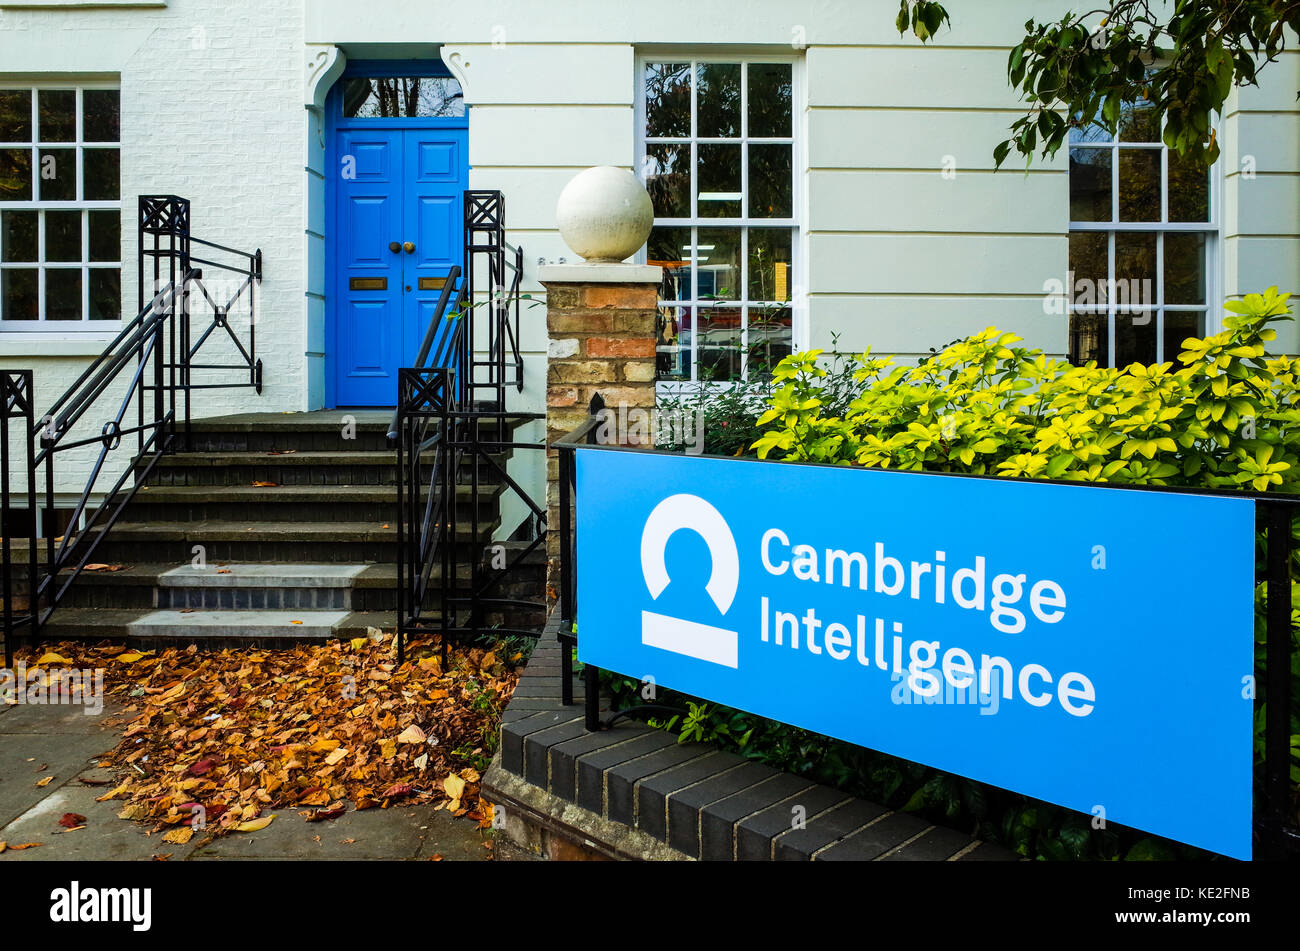 Cambridge - Inteligencia de la visualización de datos de una empresa con sede en Cambridge, Reino Unido, fundada en 2011, ayudando a las empresas a comprender sus datos conectados Foto de stock